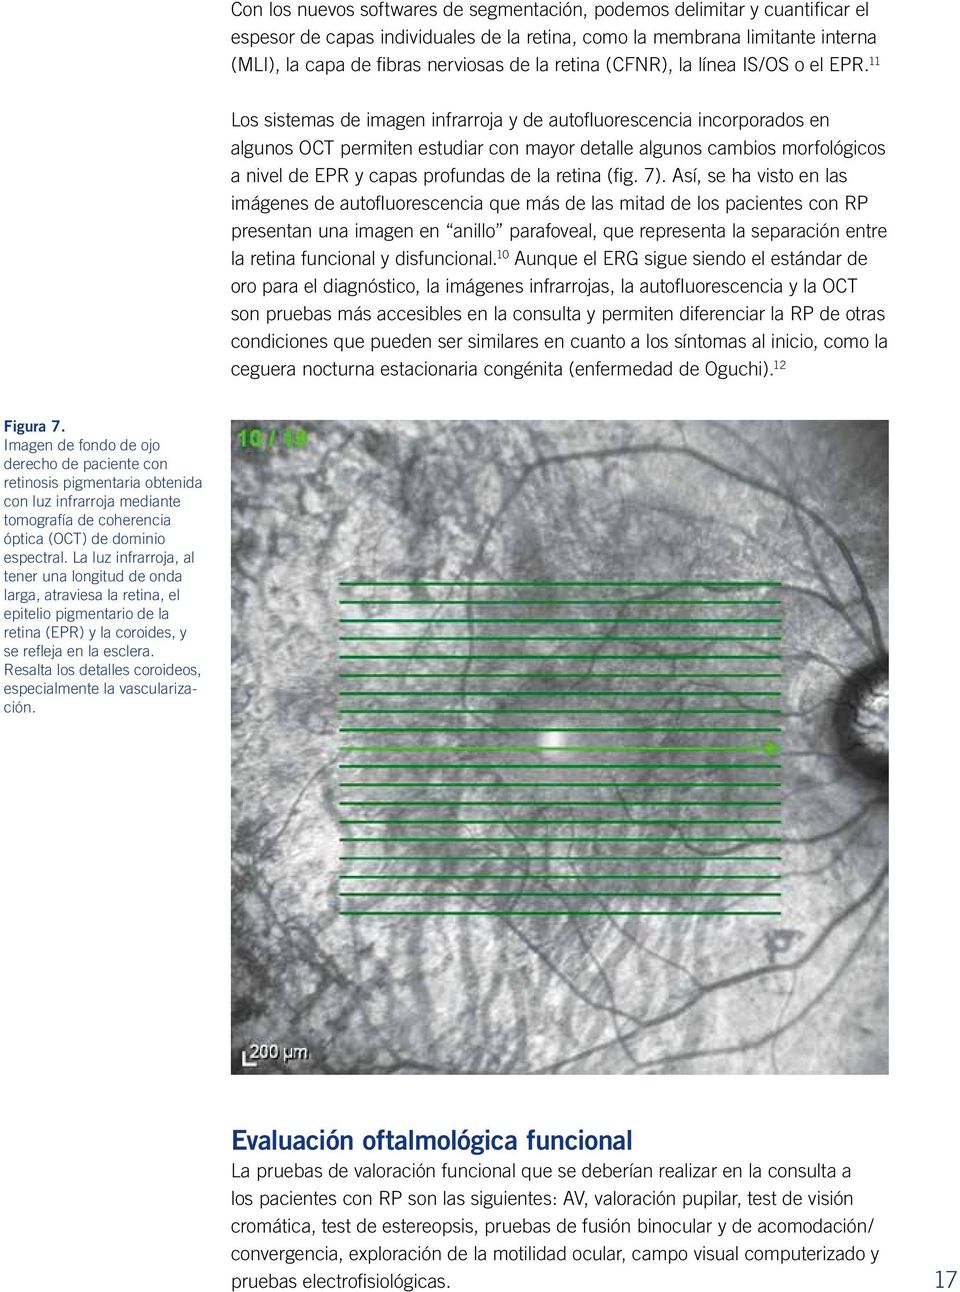 11 Los sistemas de imagen infrarroja y de autofluorescencia incorporados en algunos OCT permiten estudiar con mayor detalle algunos cambios morfológicos a nivel de EPR y capas profundas de la retina